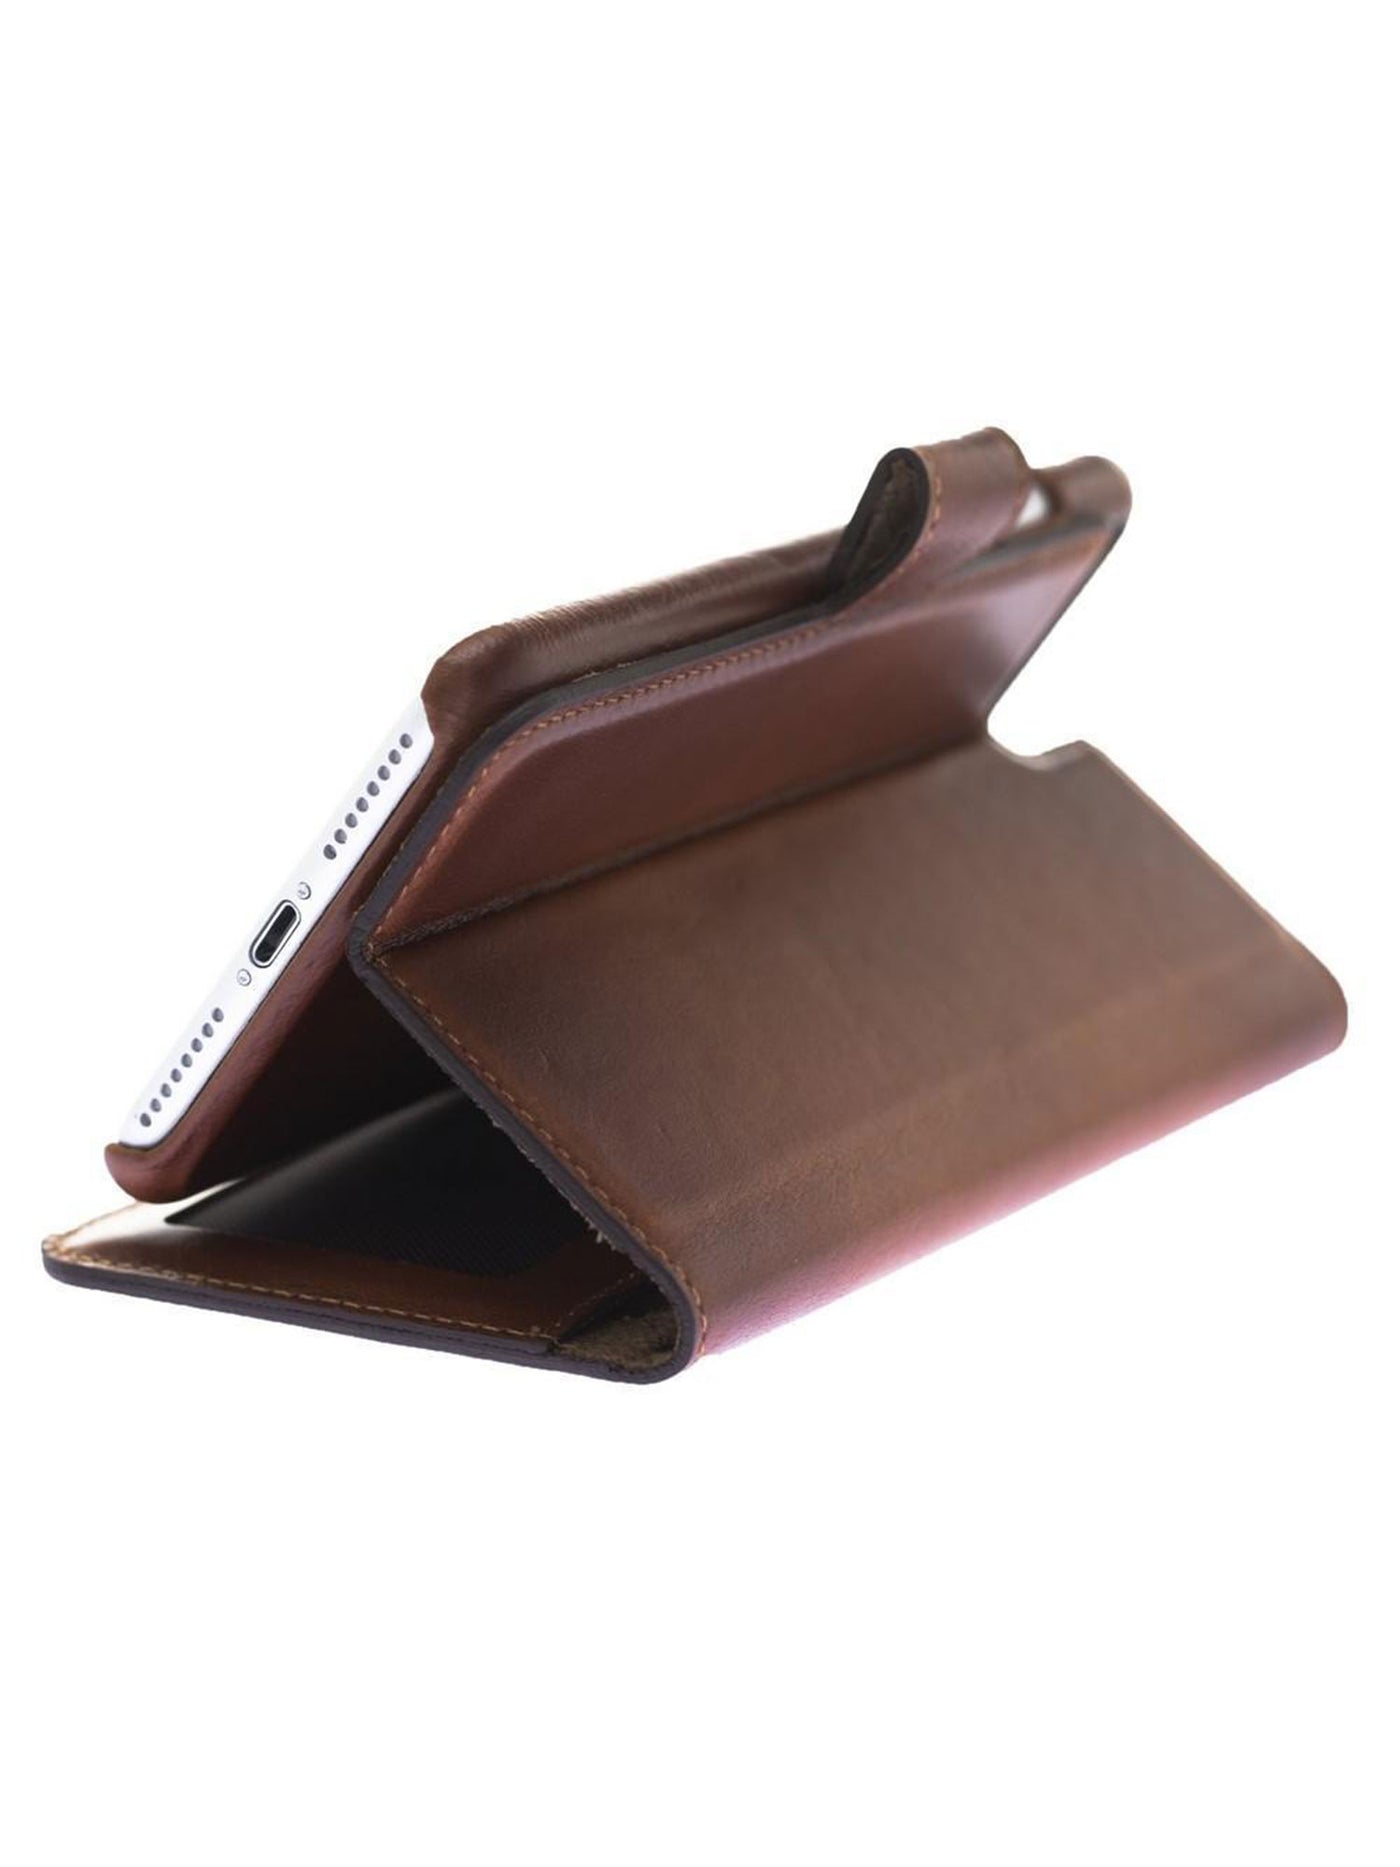 Plånboksfodral med avtagbart magnetskal i äkta läder för Apple iPhone 7/8/Plus från Bouletta Jersey- Konjak Brun #color_konjak-brun